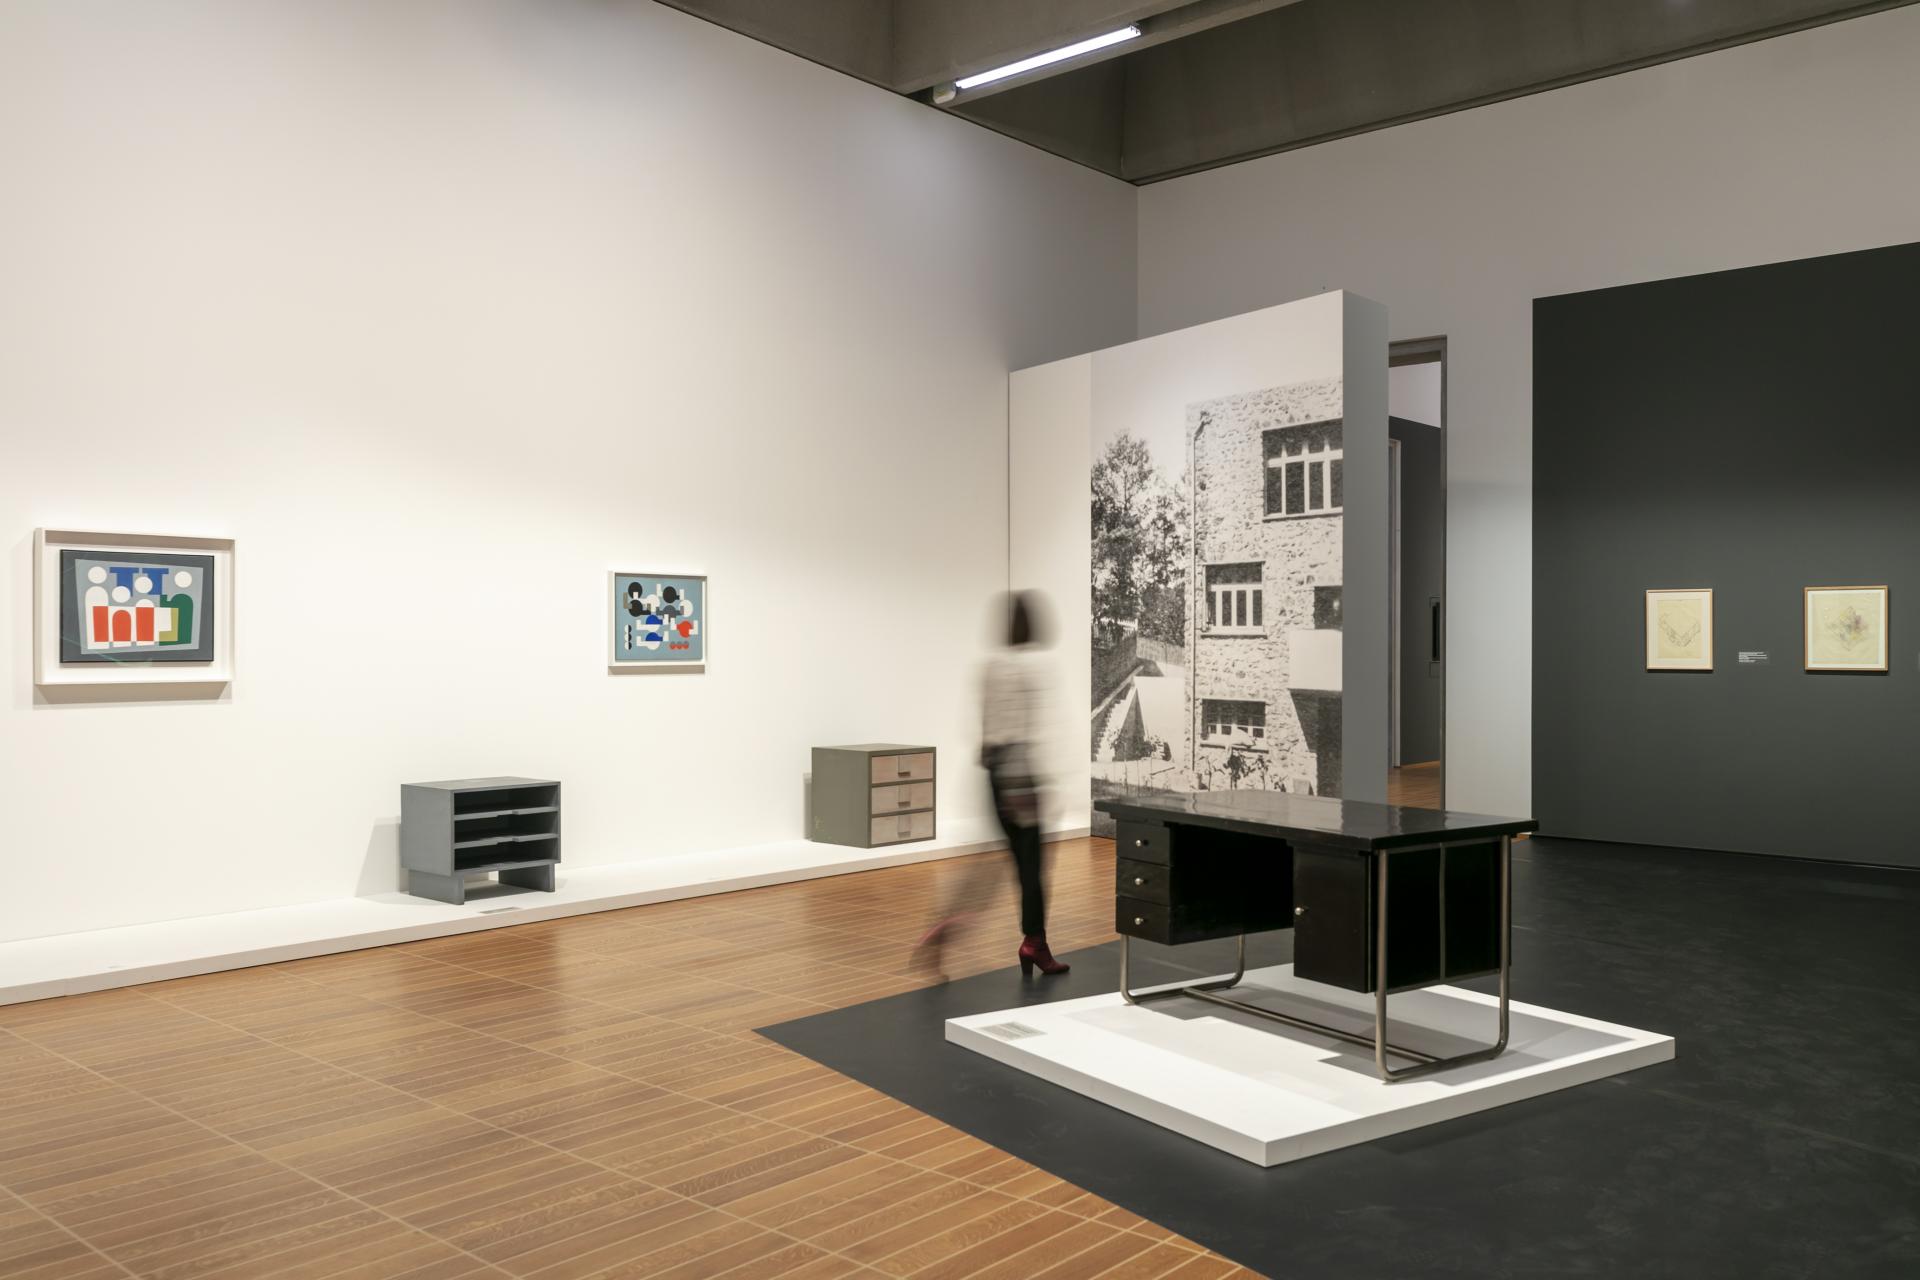 Möbel und Anfänge der freien abstrakten Kunst. (Ausstellungsansicht, Foto: Julian Salinas)